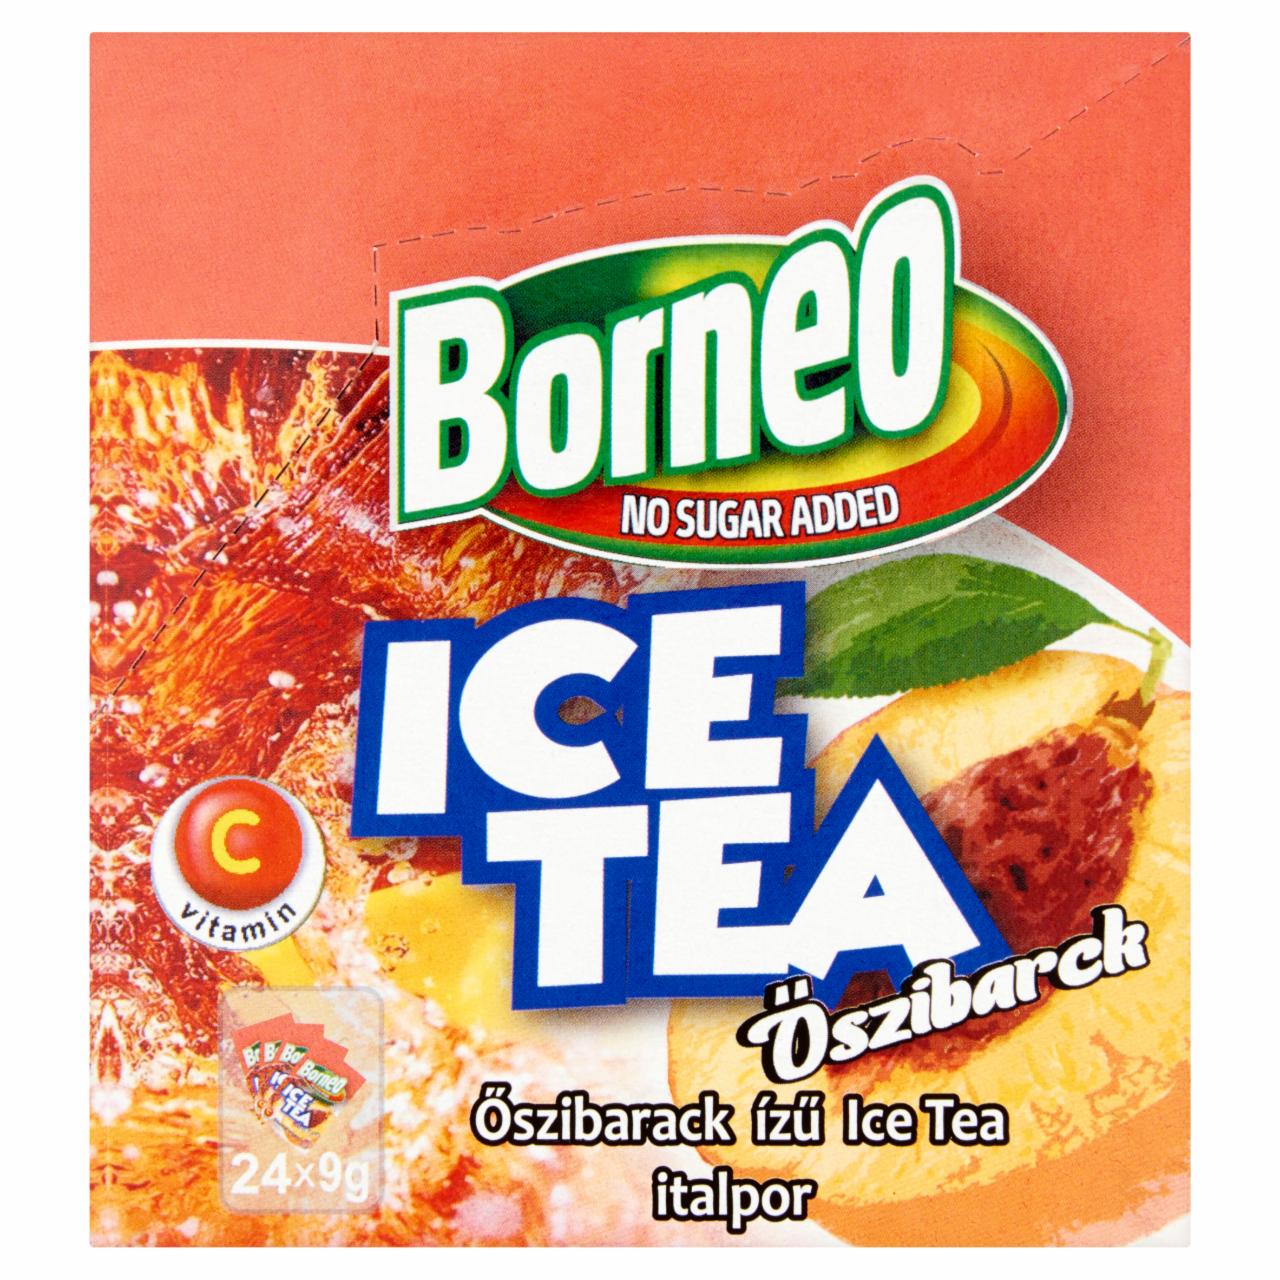 Képek - Borneo Ice Tea őszibarack ízű italpor 24 x 9 g